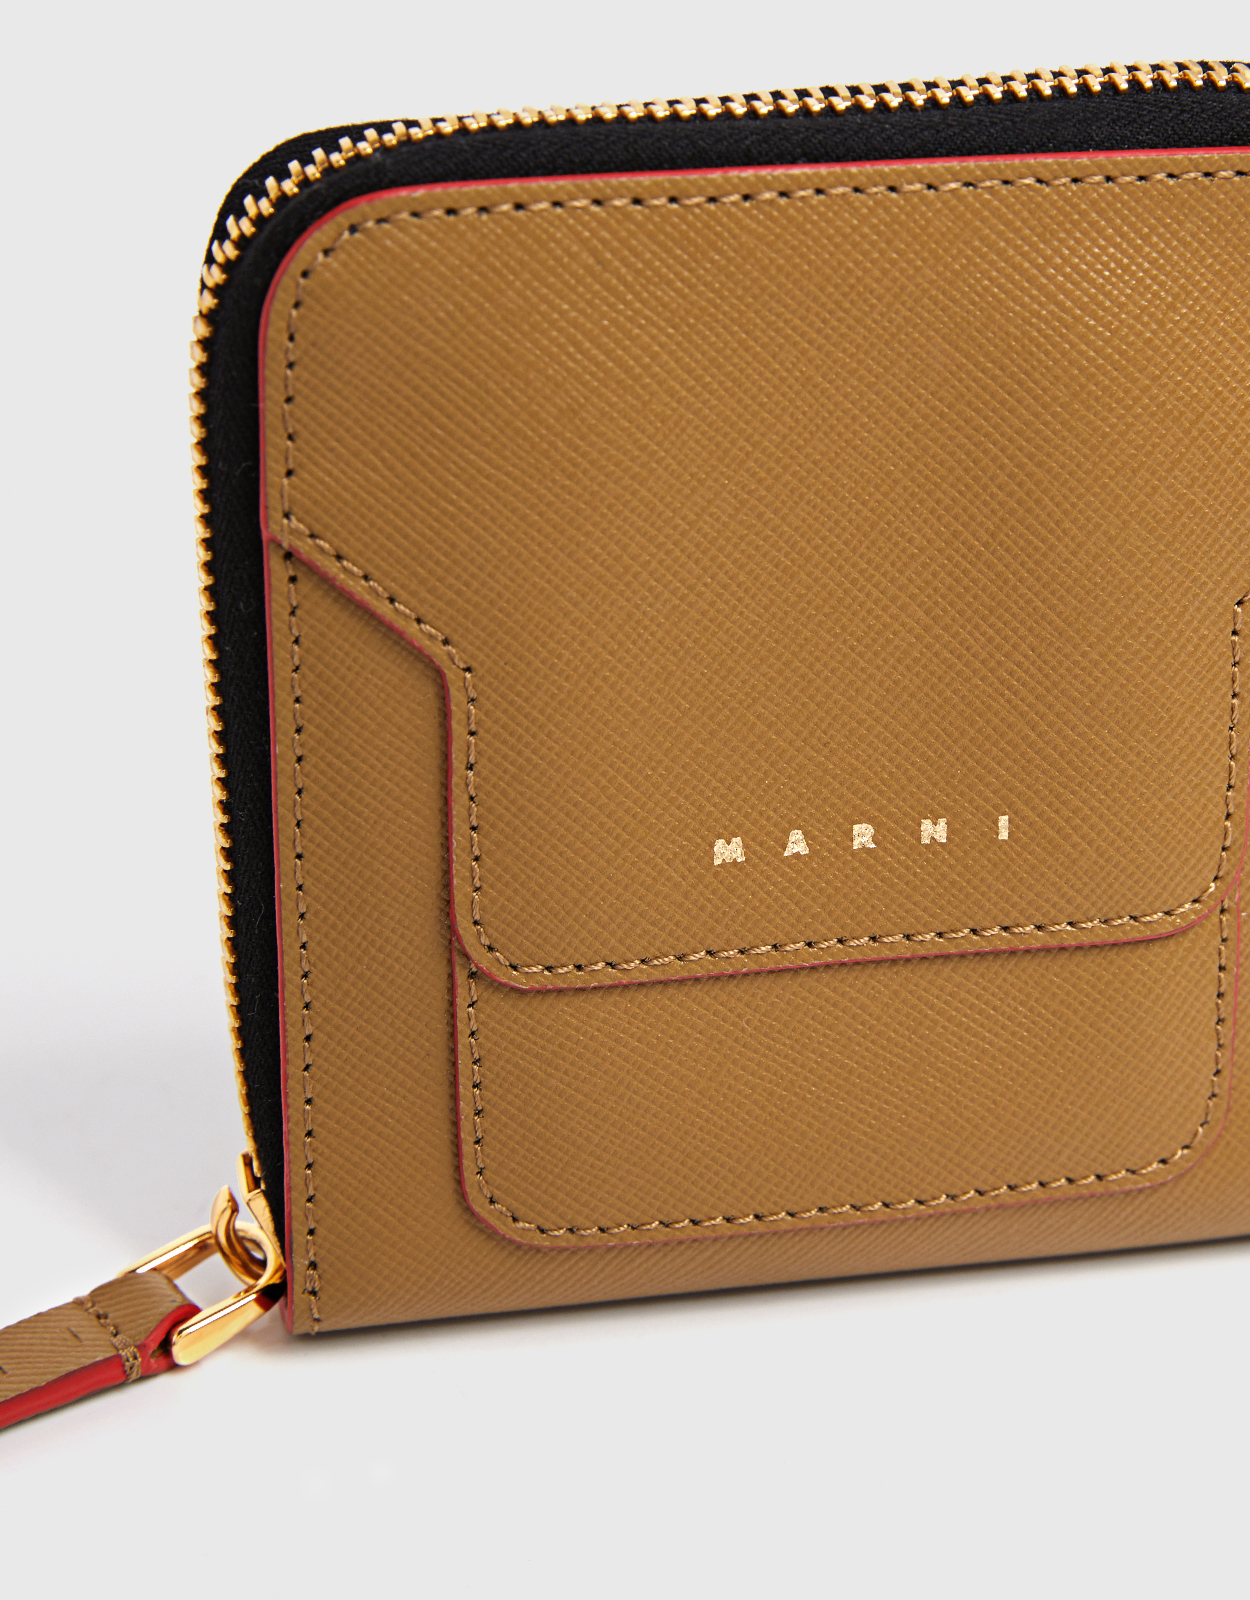 Marni Women's Wallet - Green - Wallets